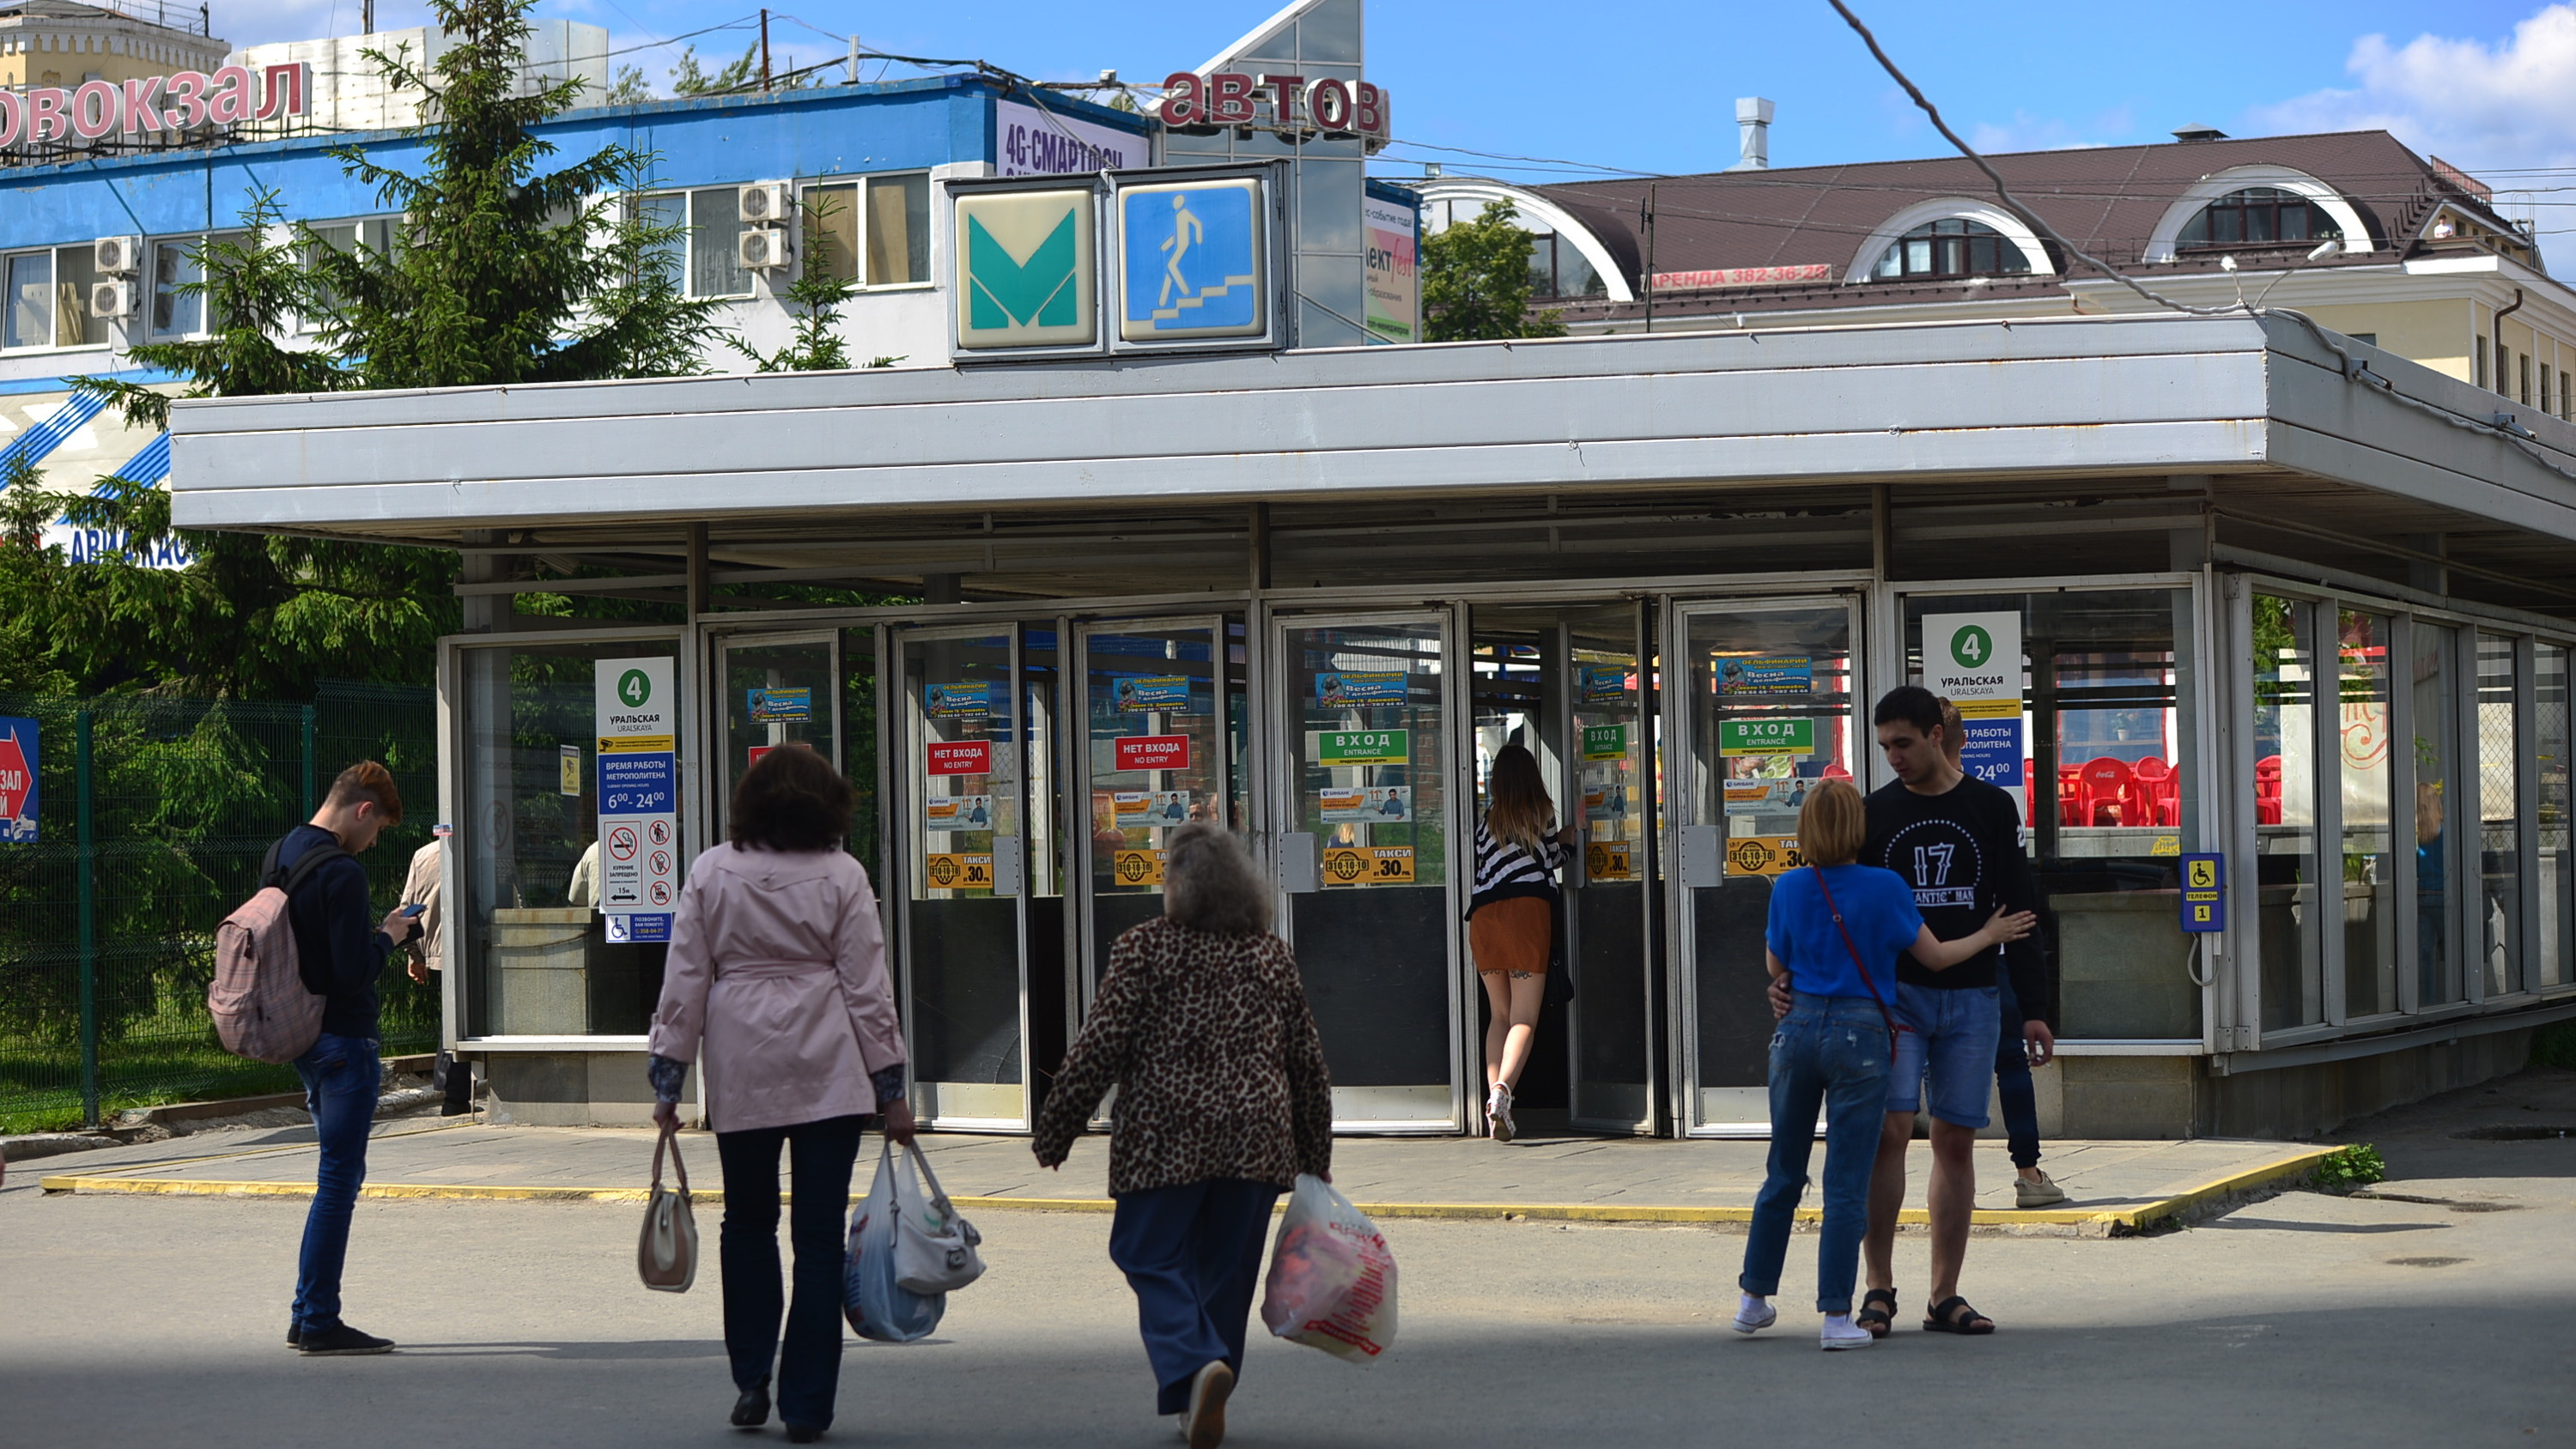 В Екатеринбурге обсудили, как из метро попадать сразу на вокзал. Чем не понравился принцип сухих ног?